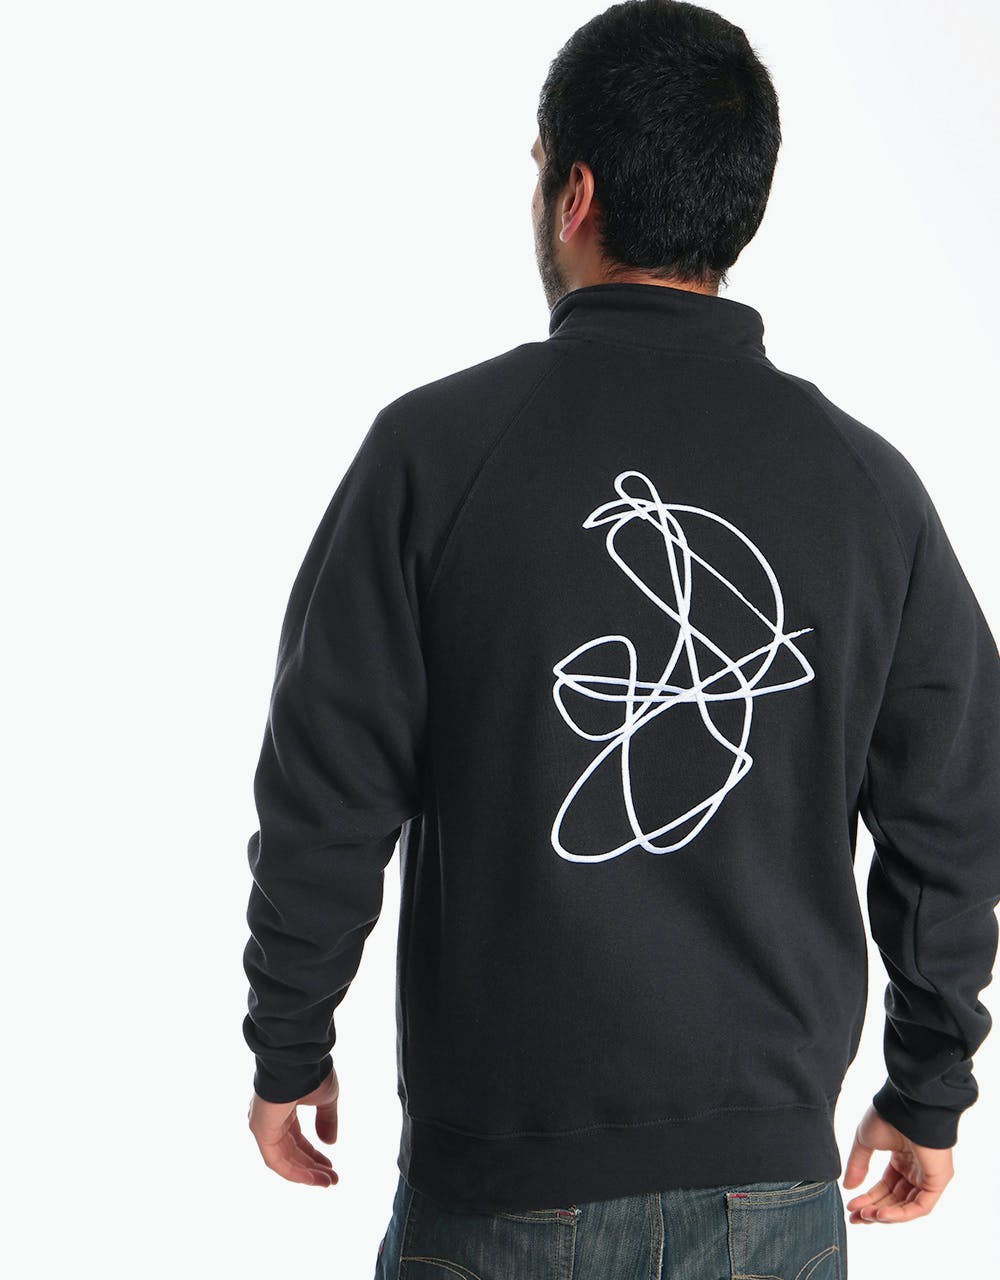 Poetic Collective Doodle Half-Zip Sweatshirt - Black